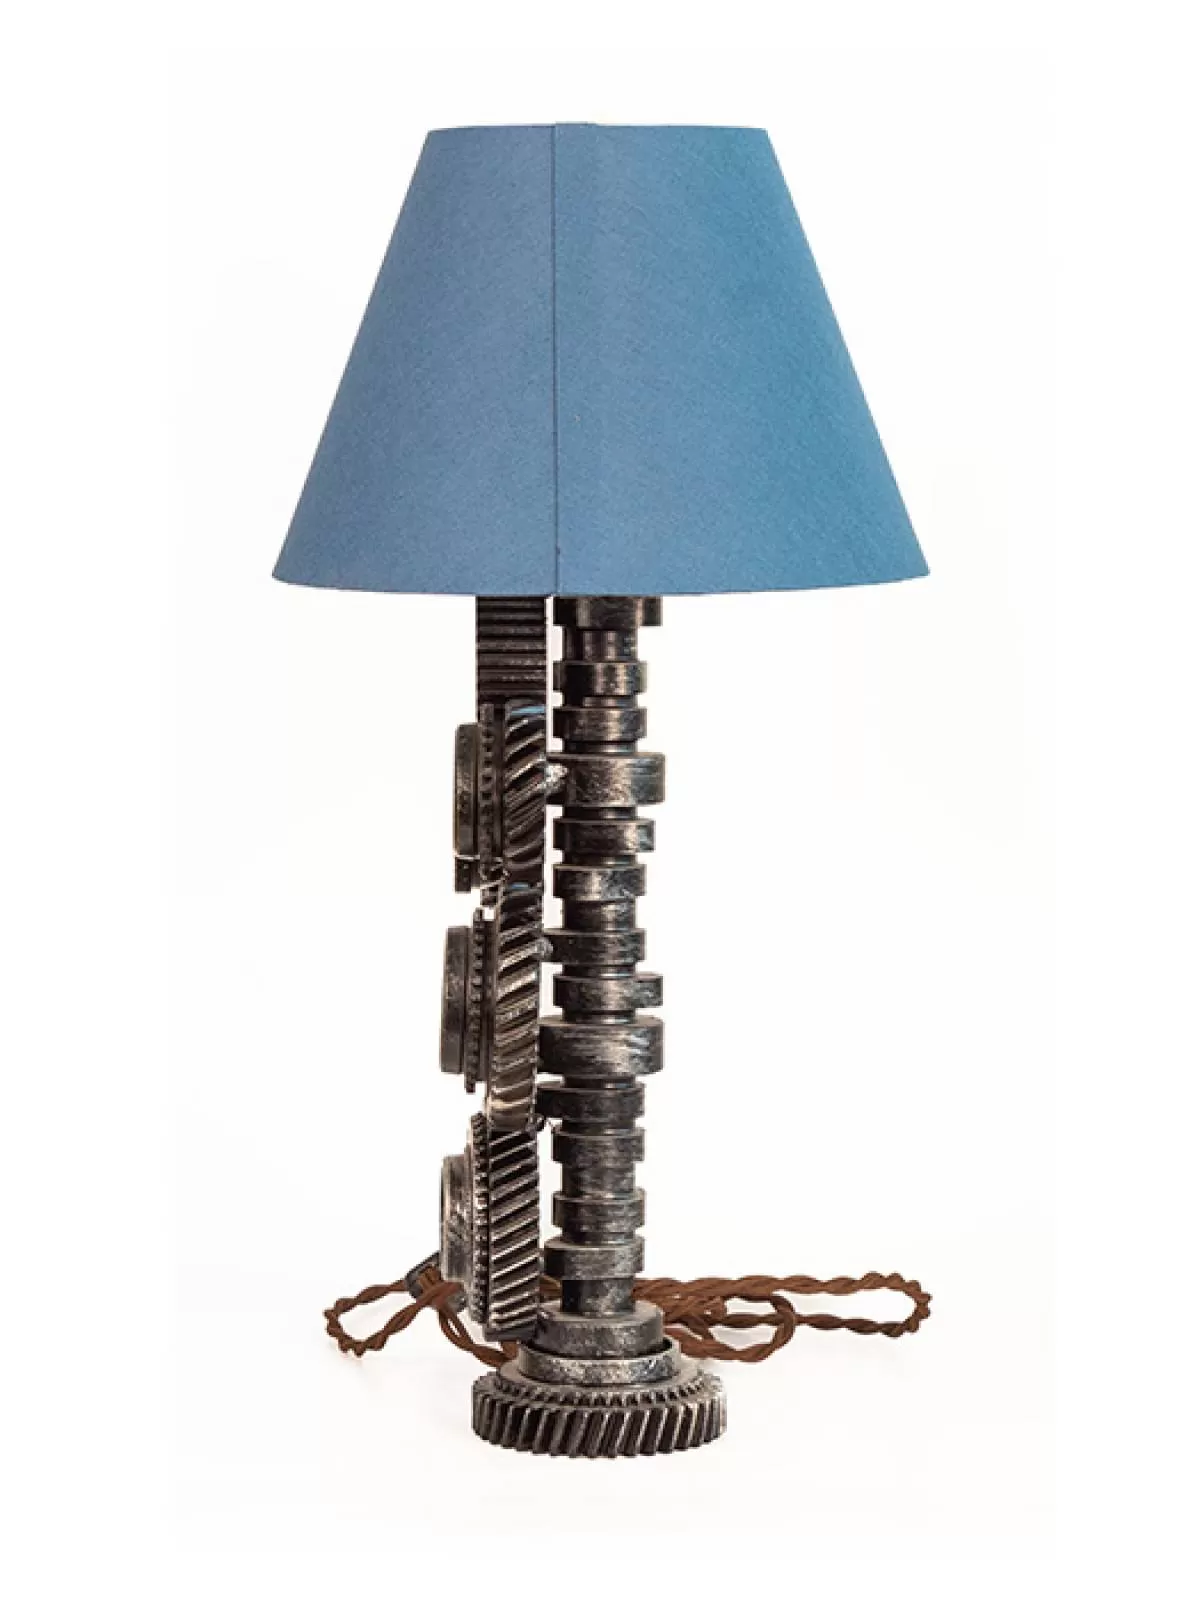 Светильник «Шестерни» с синим абажуром. Фотография 4